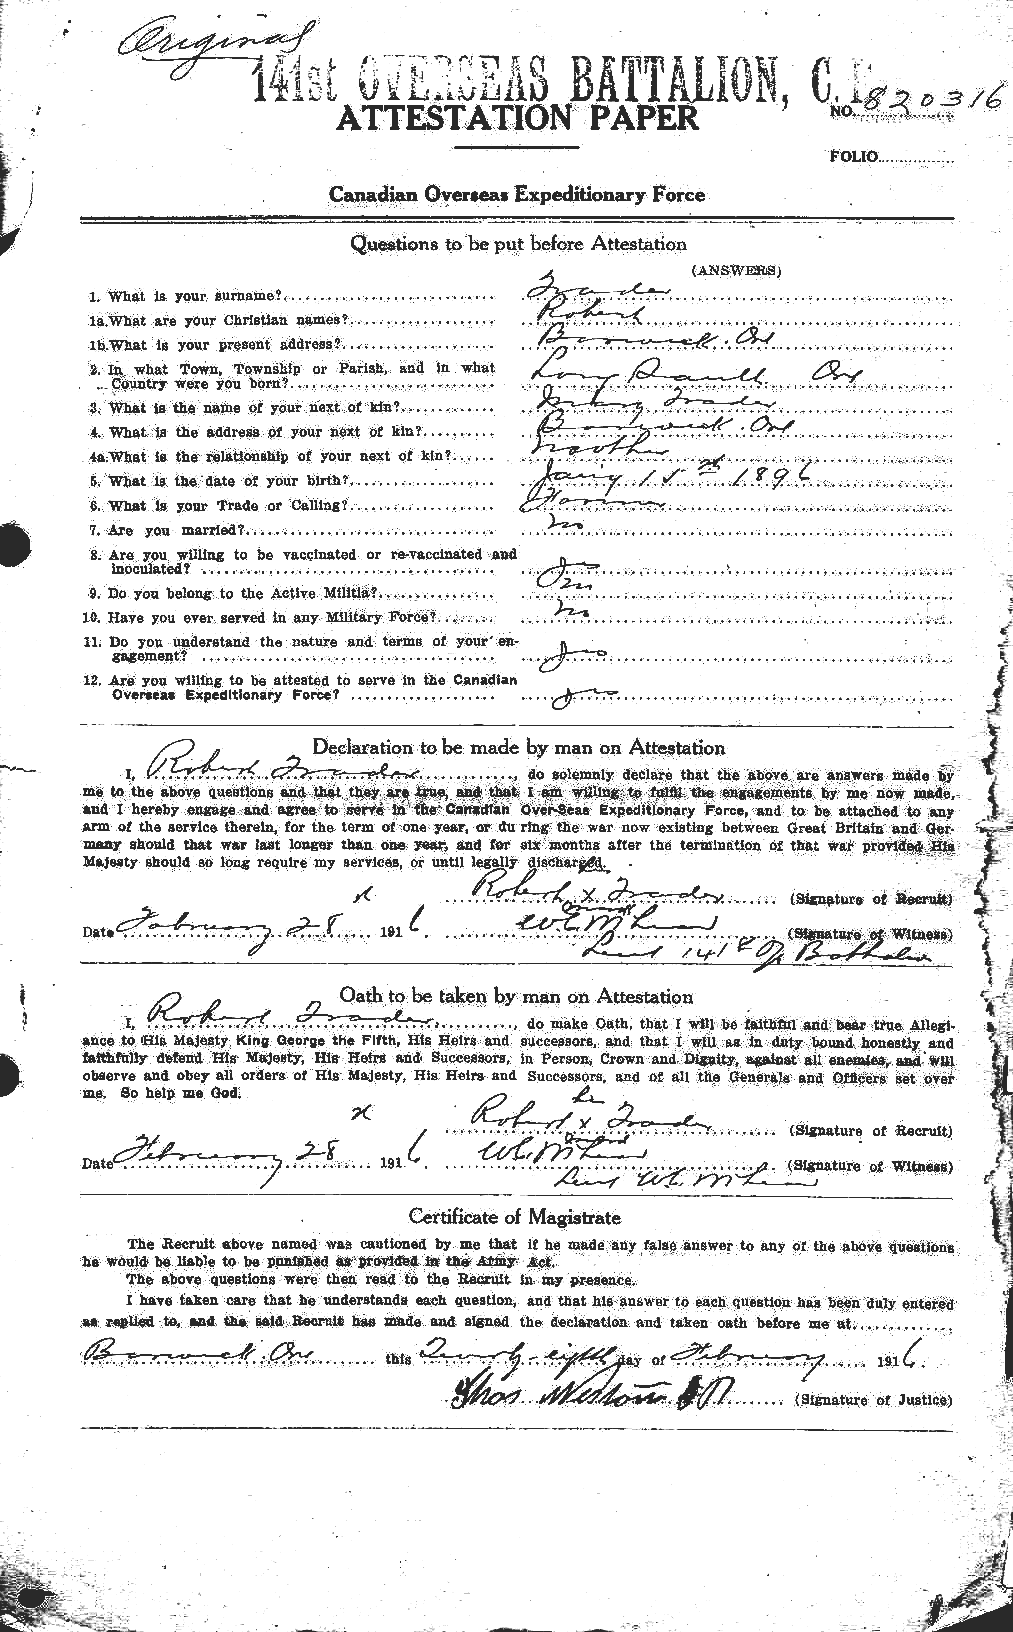 Dossiers du Personnel de la Première Guerre mondiale - CEC 637609a